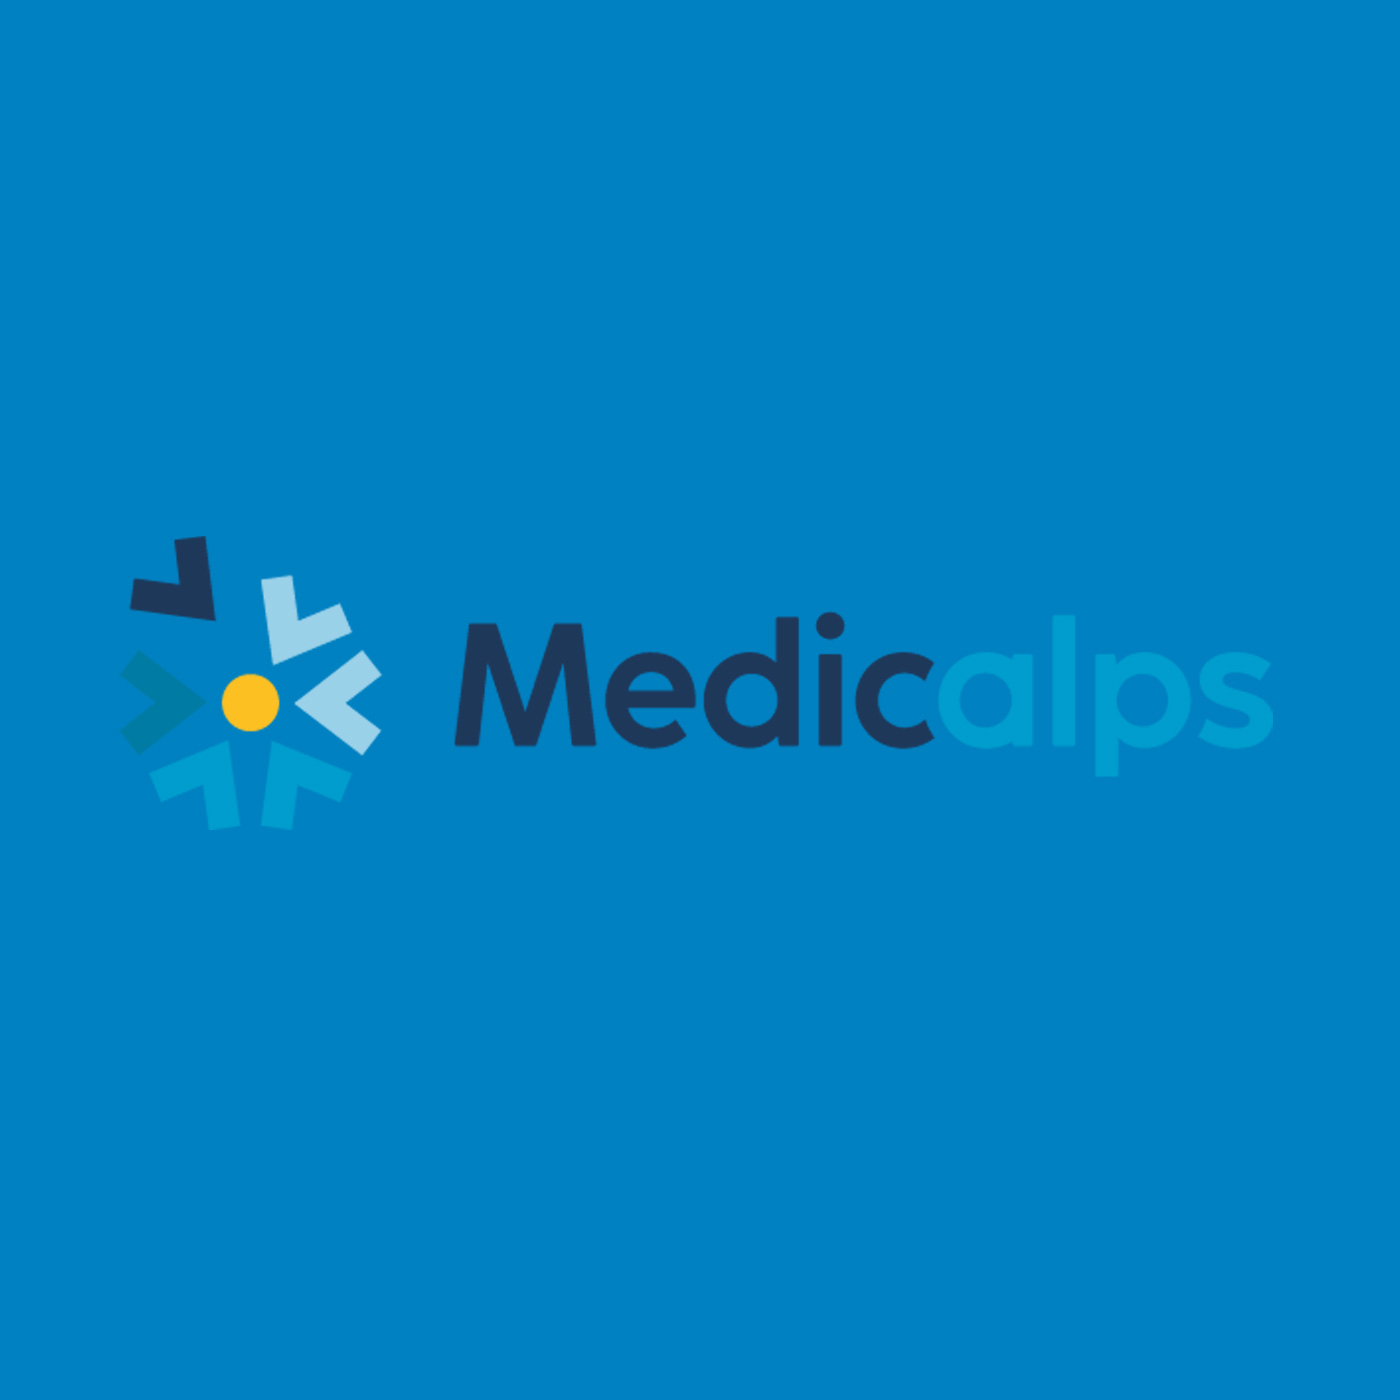 Logo Medicalpes